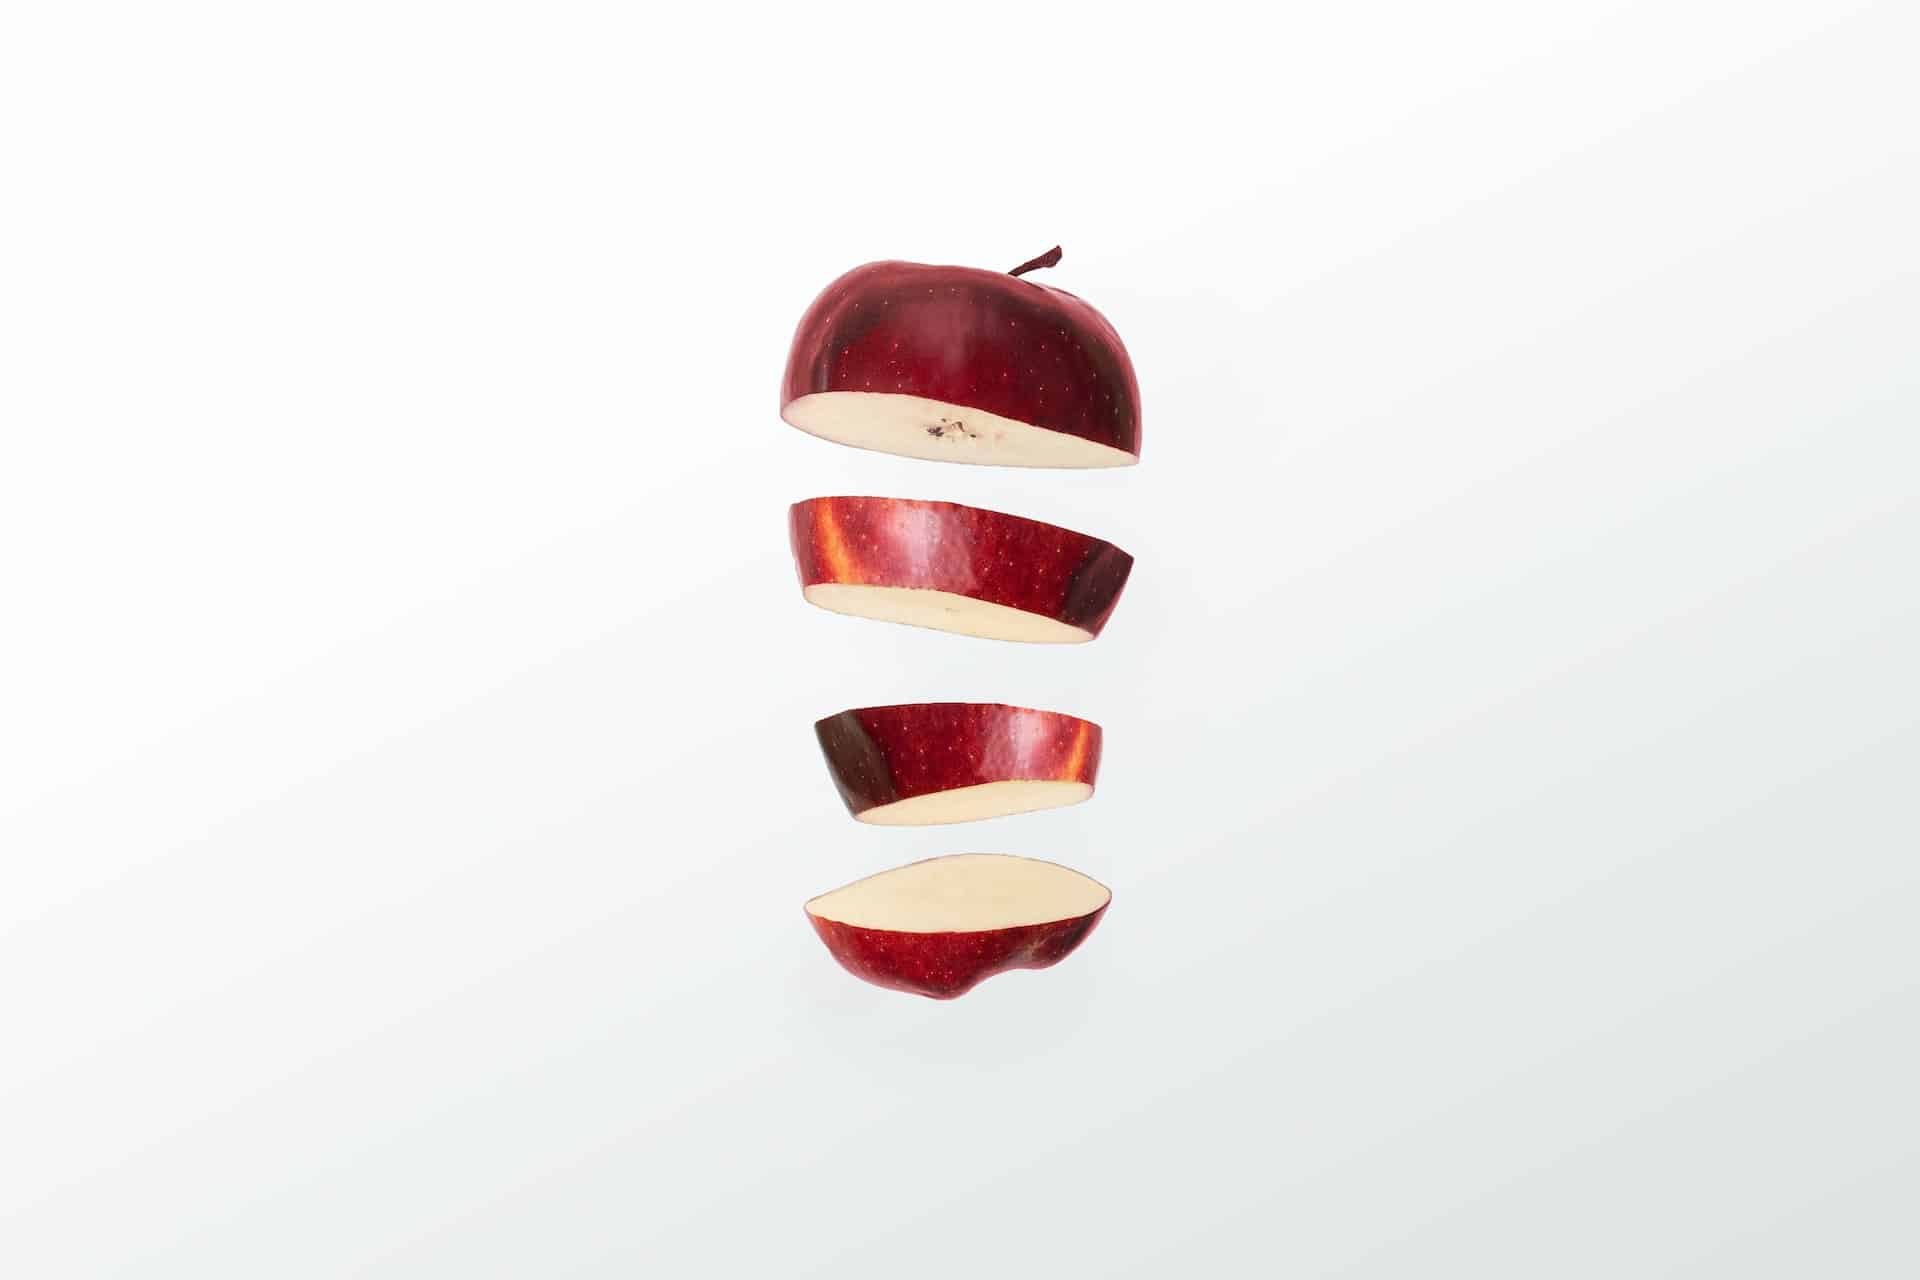 Sind gewachste Äpfel sicher zu essen?